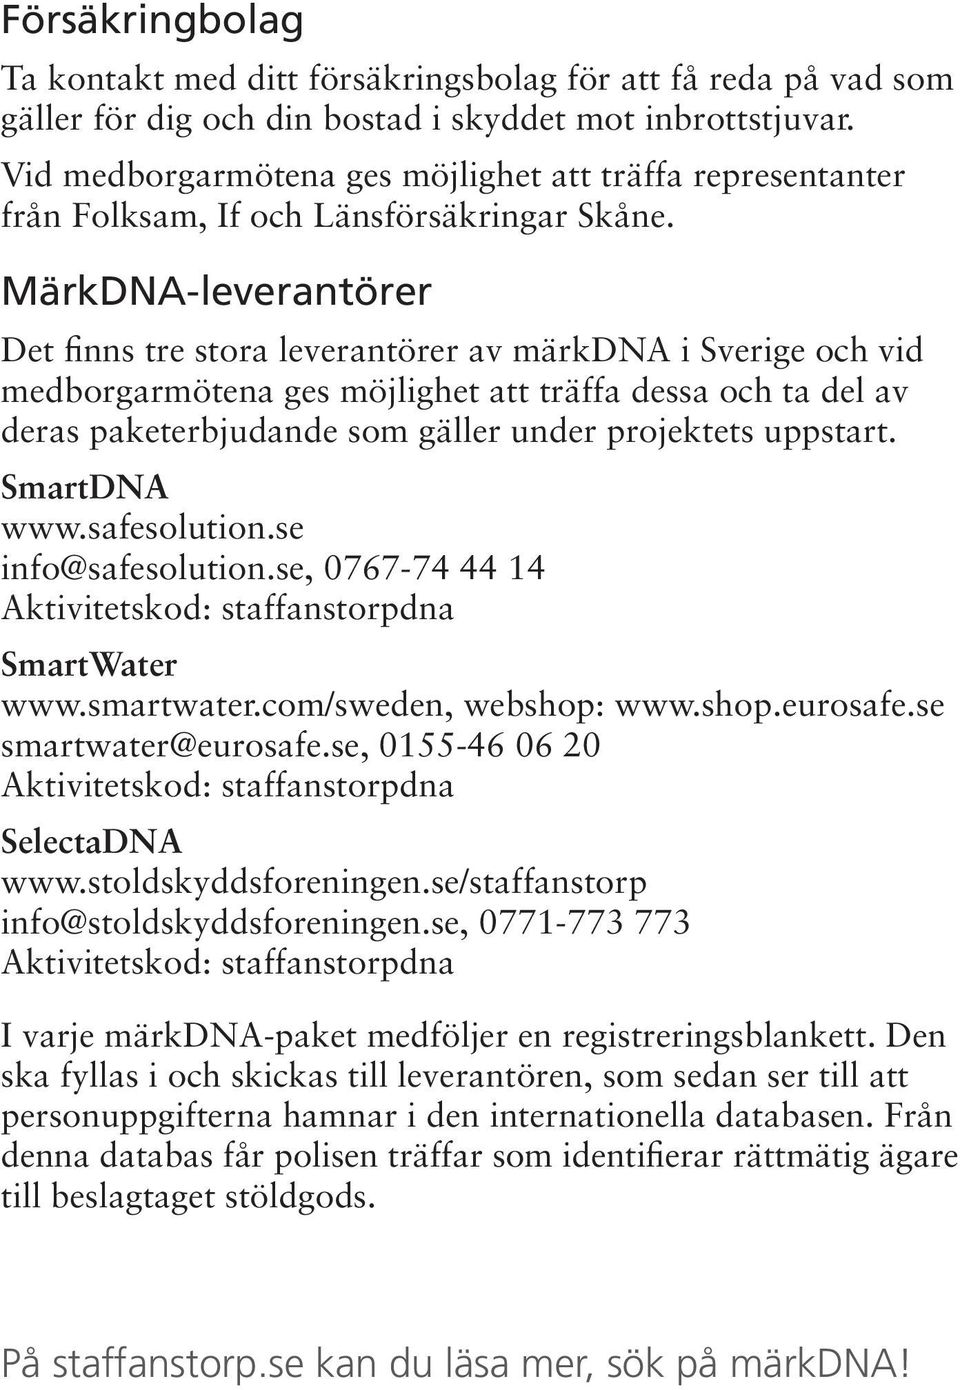 MärkDNA-leverantörer Det finns tre stora leverantörer av märkdna i Sverige och vid medborgarmötena ges möjlighet att träffa dessa och ta del av deras paketerbjudande som gäller under projektets